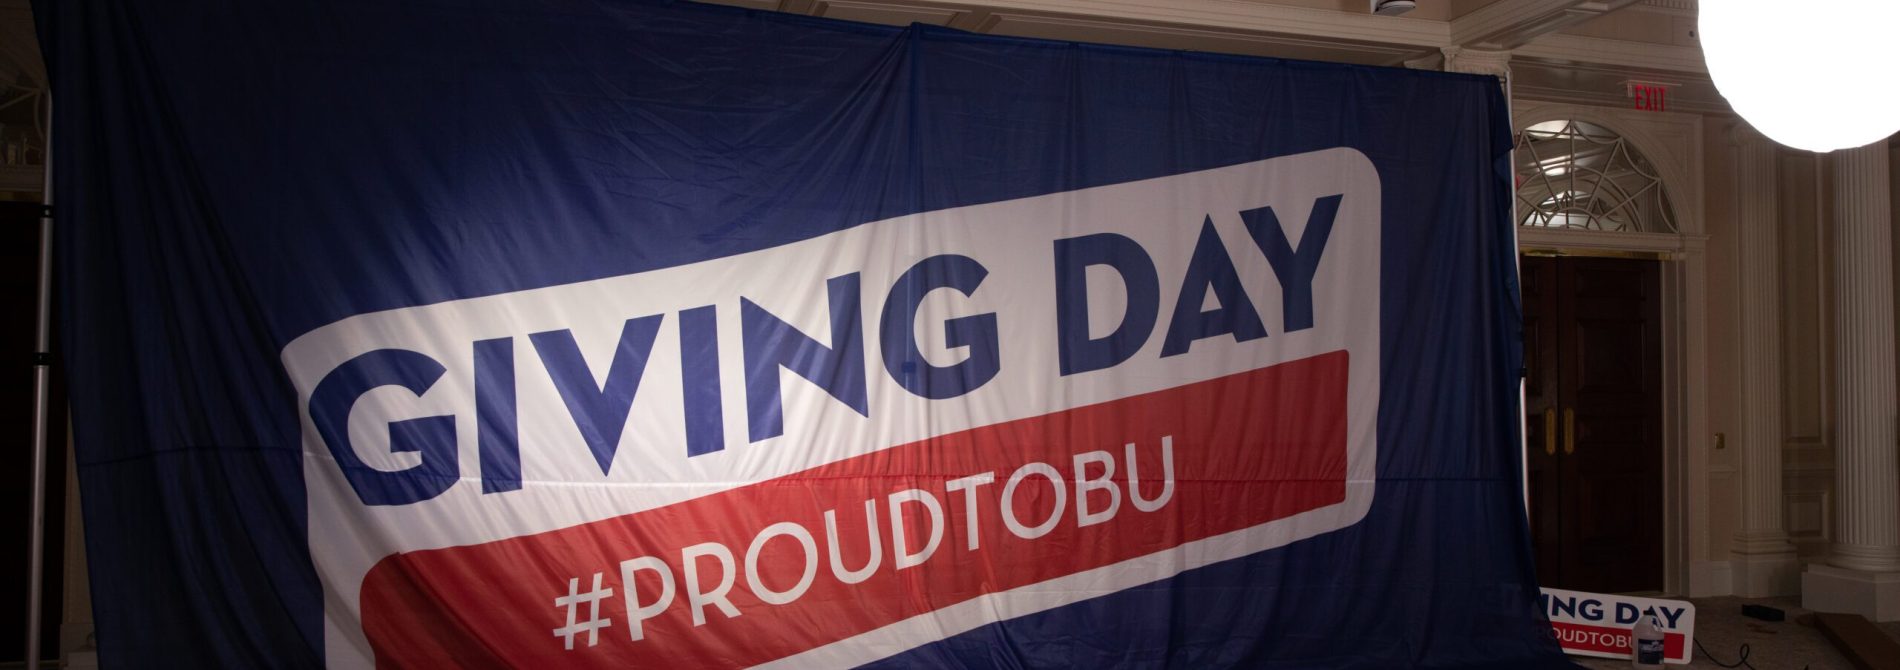 Giant BU Giving Day branded flag